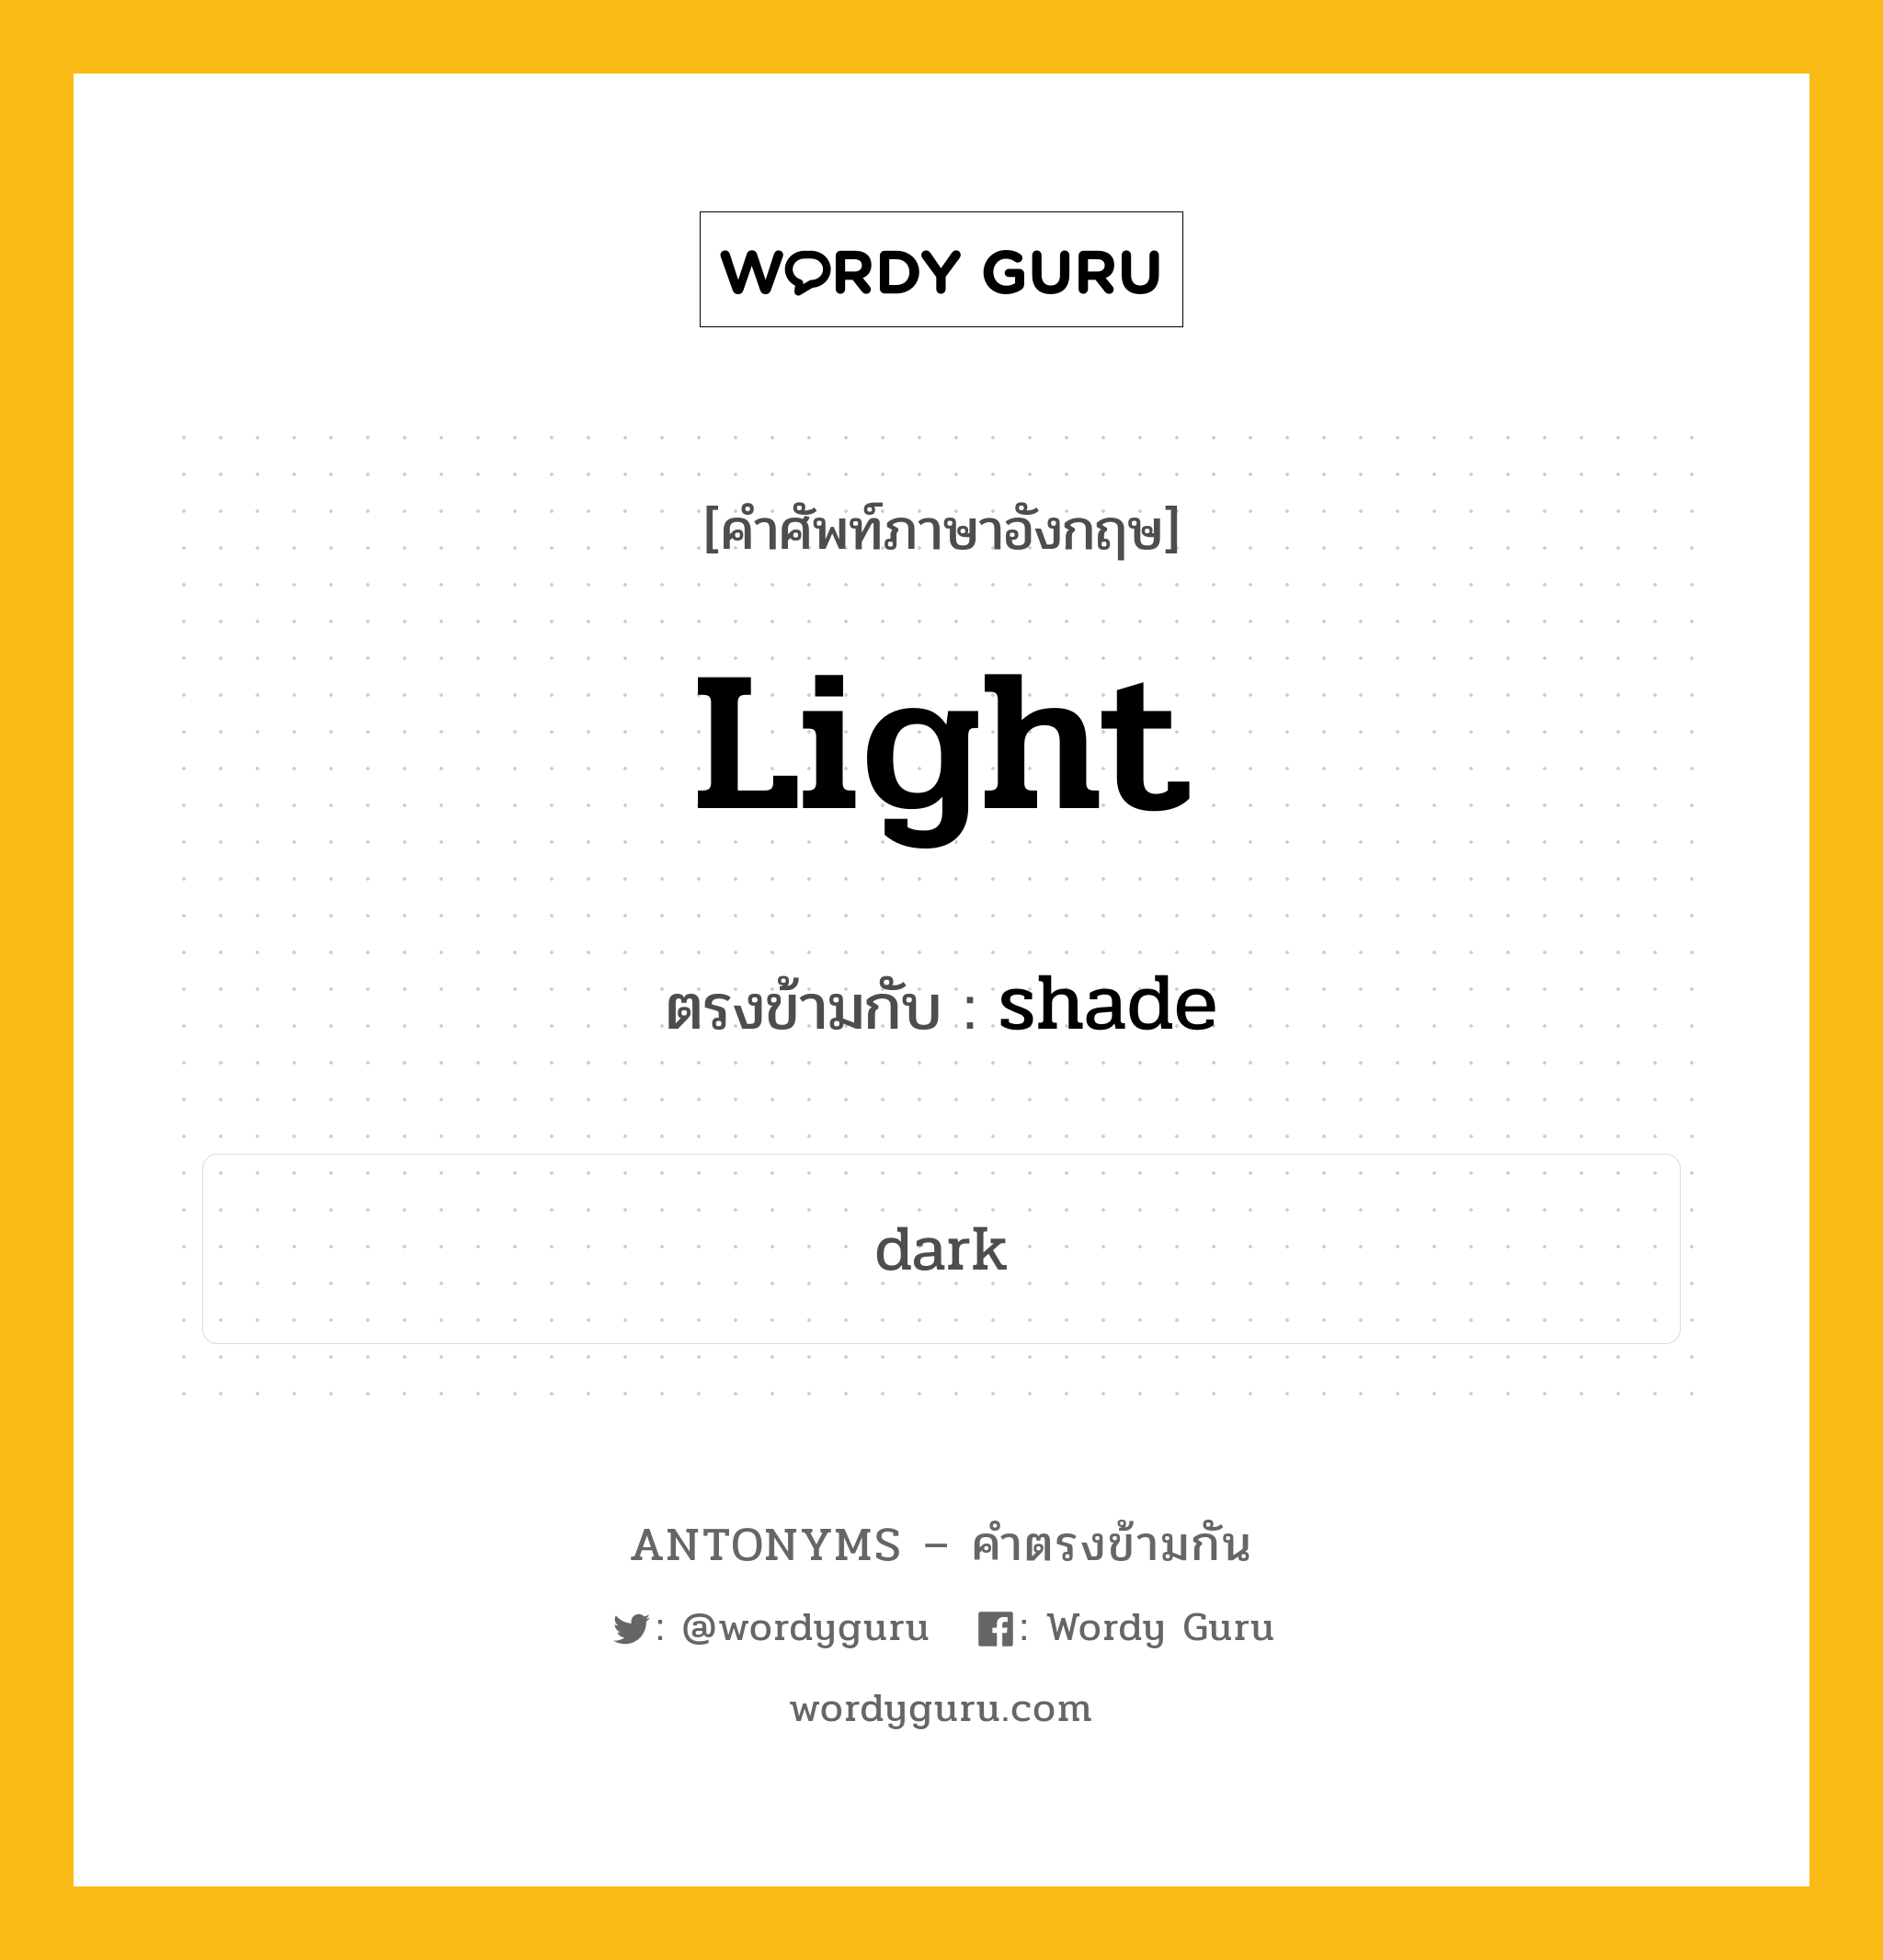 light เป็นคำตรงข้ามกับคำไหนบ้าง?, คำศัพท์ภาษาอังกฤษ light ตรงข้ามกับ shade หมวด shade